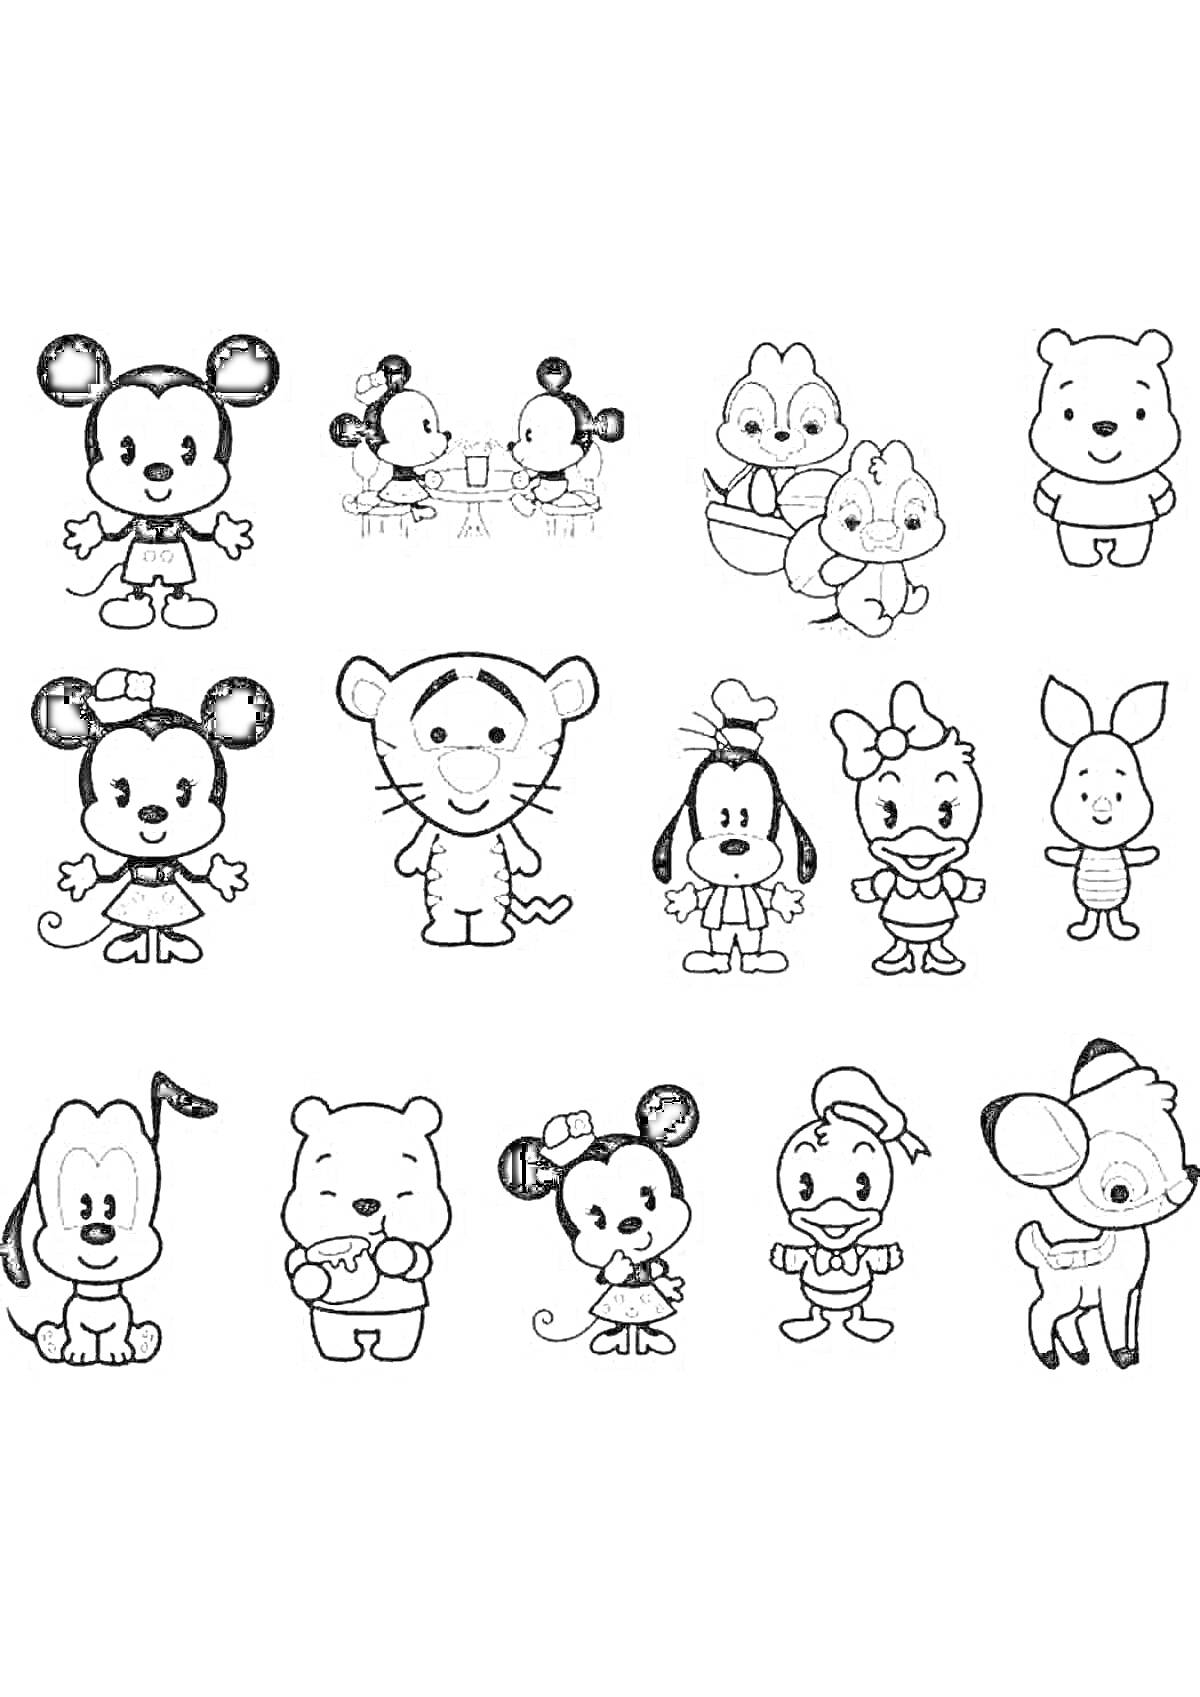 Раскраска Мини животные - мышки в разных костюмах, утята, медвежата, тигренок, зайчик, пёсик, олень, комбинированные животные